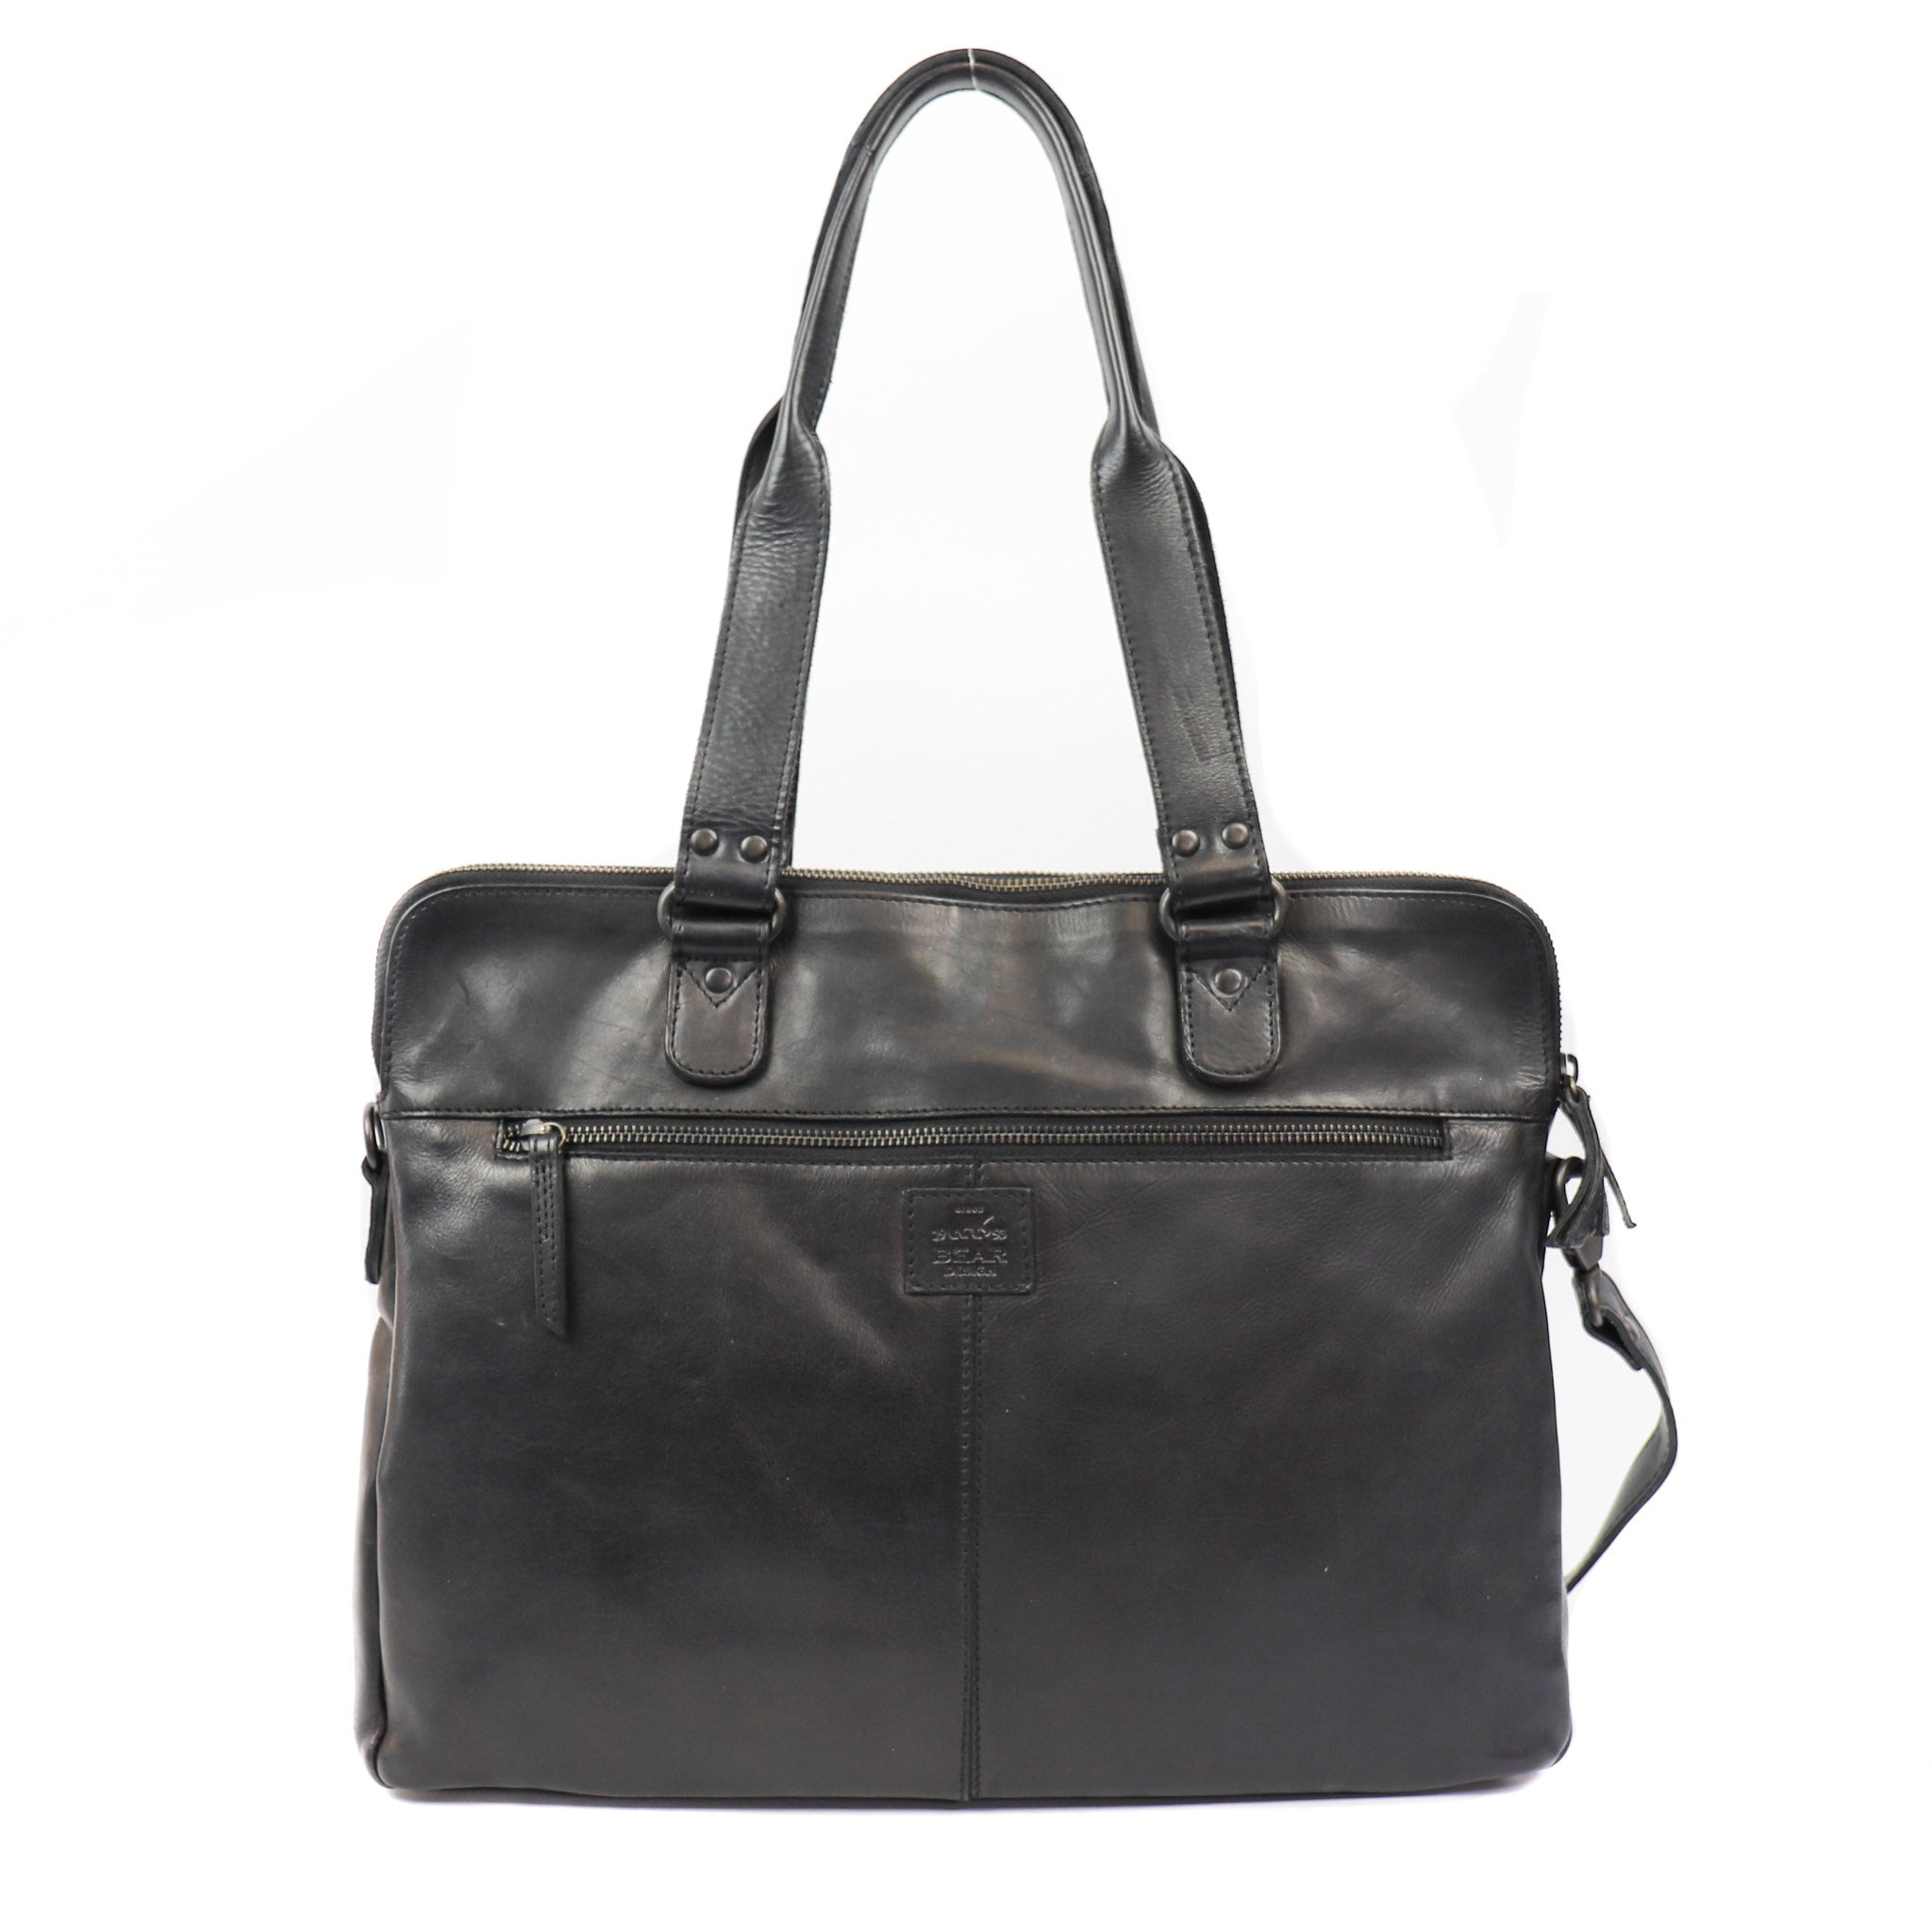 Hand/shoulder bag 'Lia' black - CL 35220